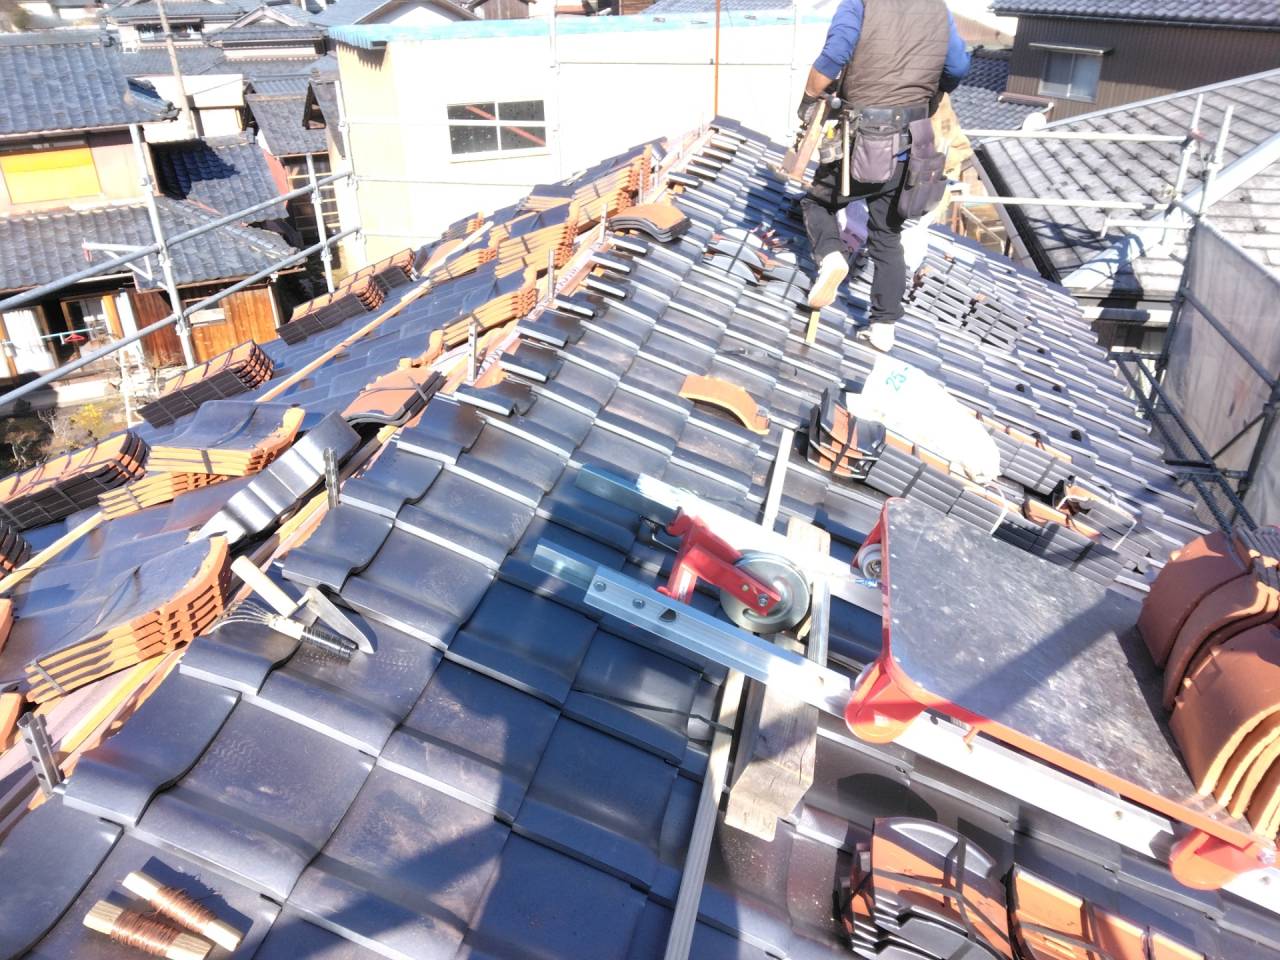 鯖江市で屋根リフォーム工事に来ています